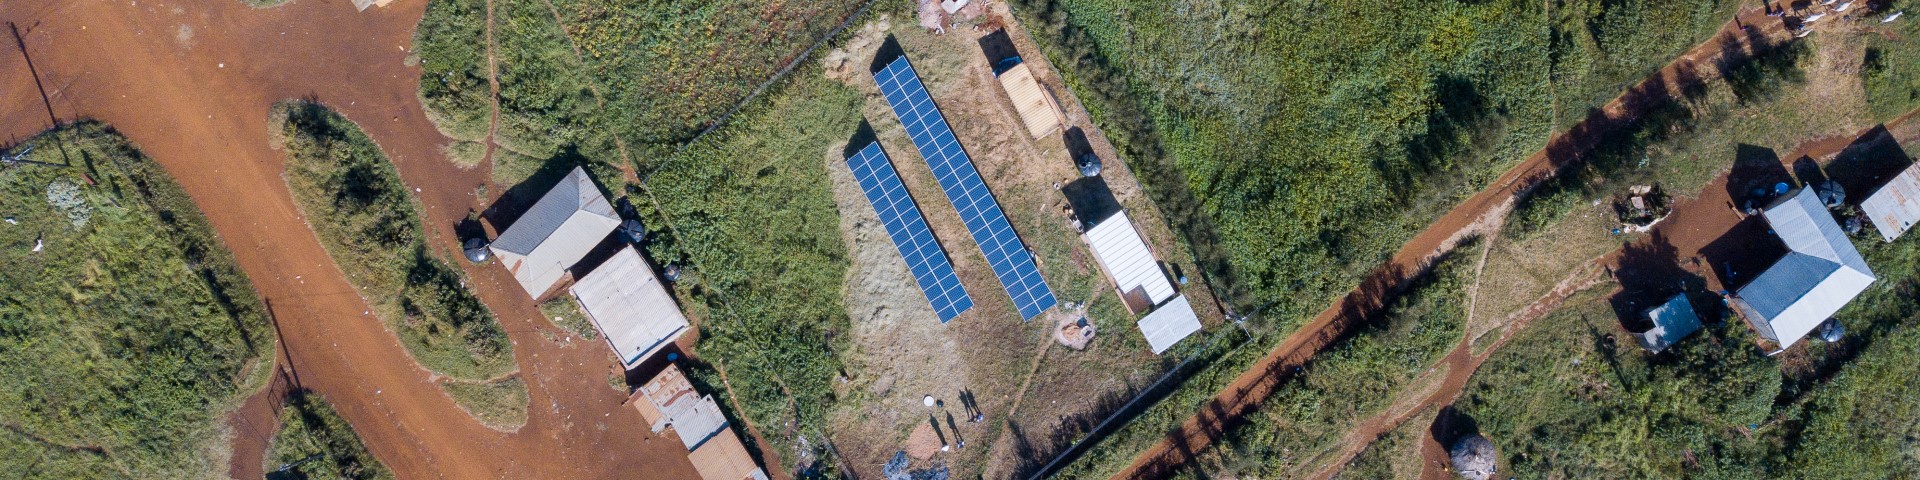 Eine Drohnenaufnahme zeigt eine Solaranlage zwischen vereinzelten Gebäuden in einer ländlichen Umgebung.